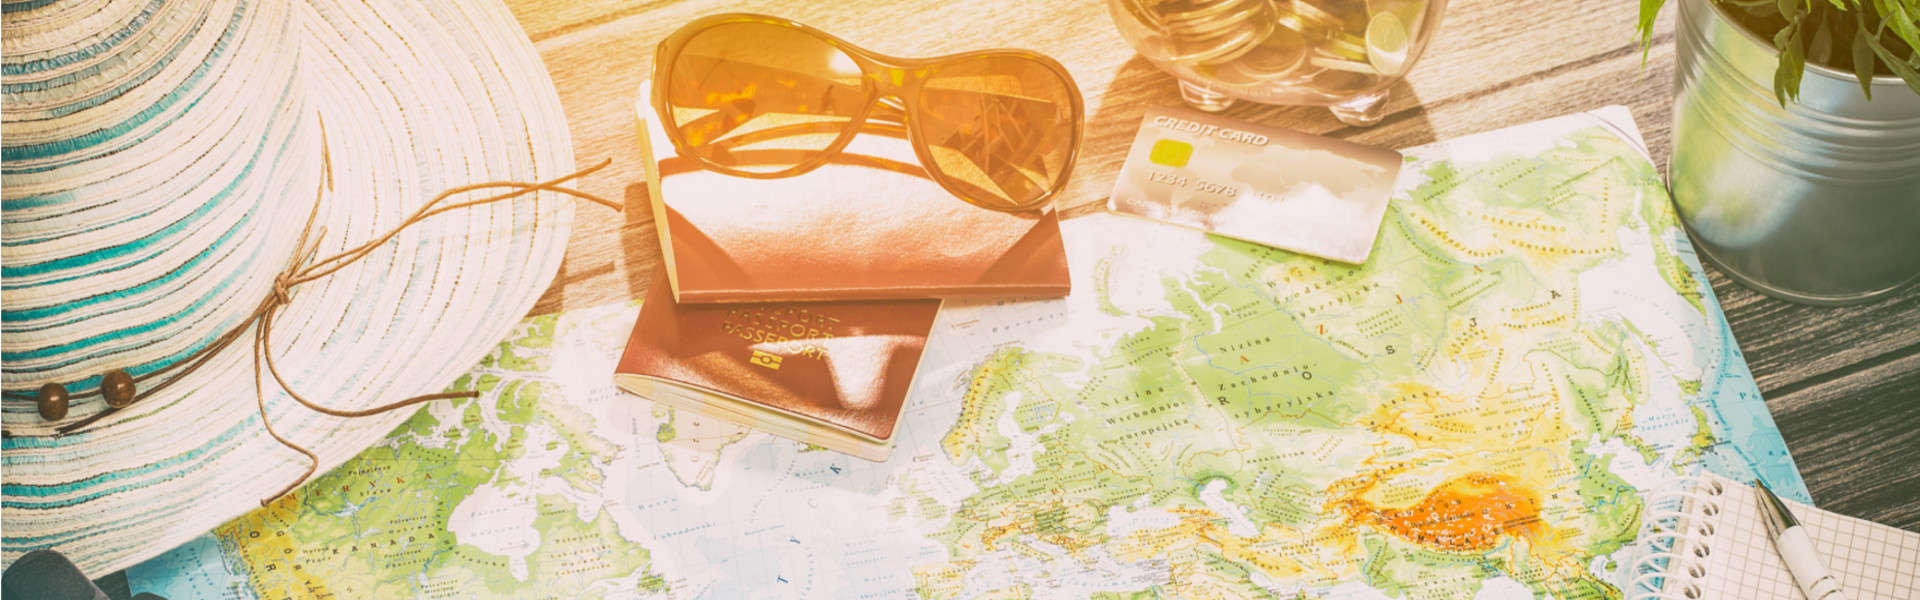 Reisemagazin mit Tipps und Tricks für Ihre nächste Reise